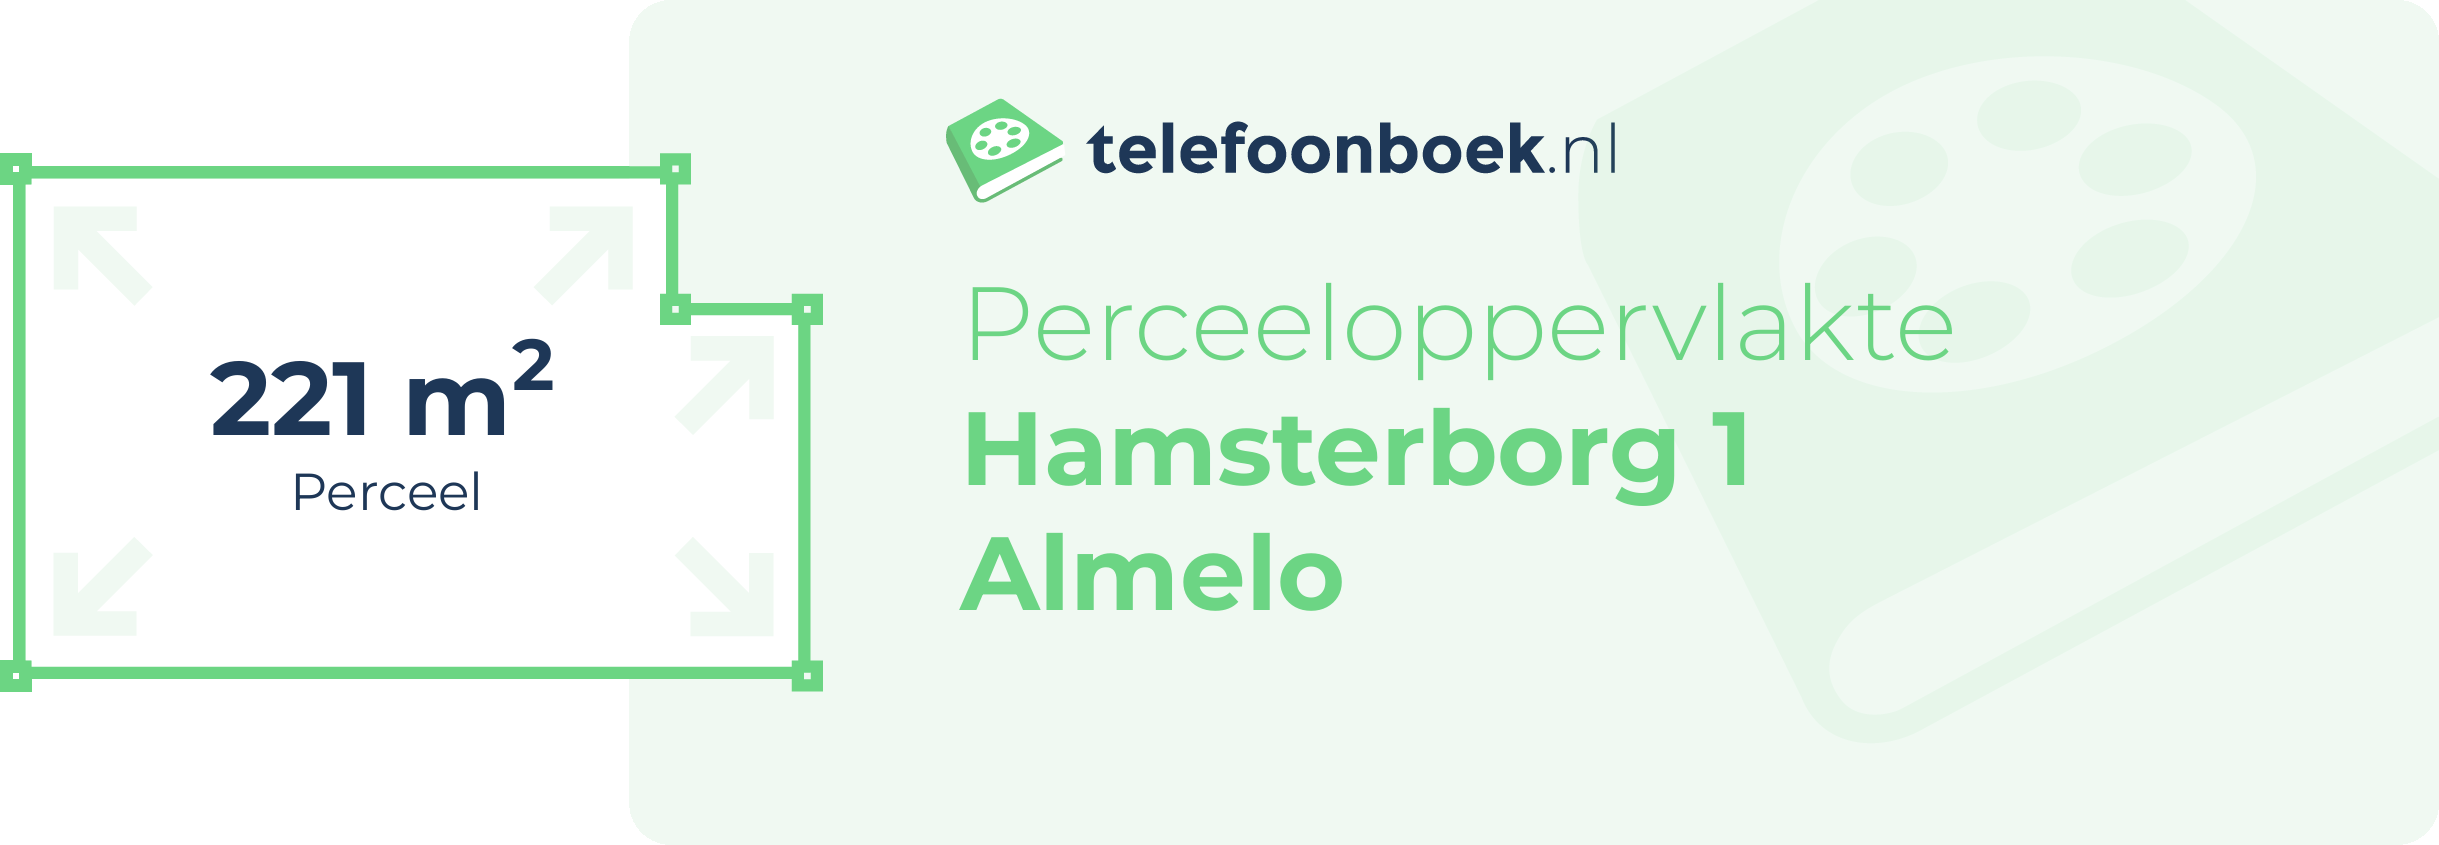 Perceeloppervlakte Hamsterborg 1 Almelo